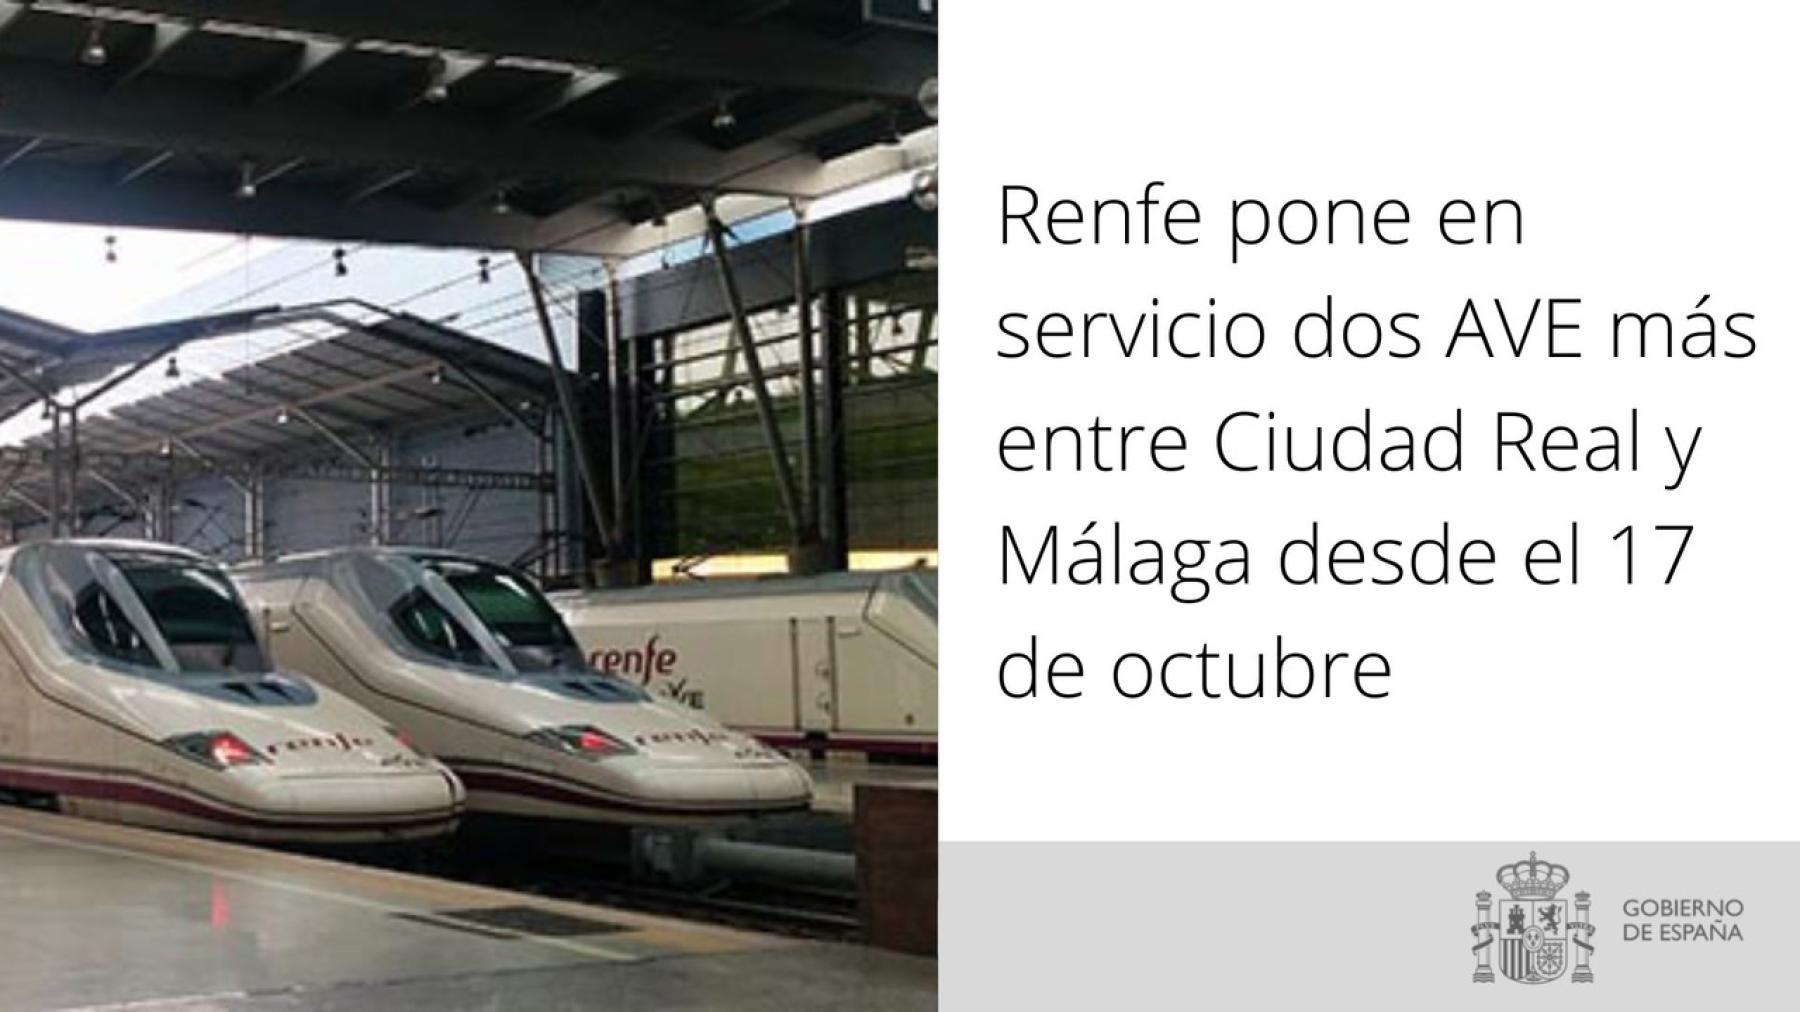 Renfe pone en servicio dos AVE más entre Ciudad Real y Málaga desde el 17 de octubre 